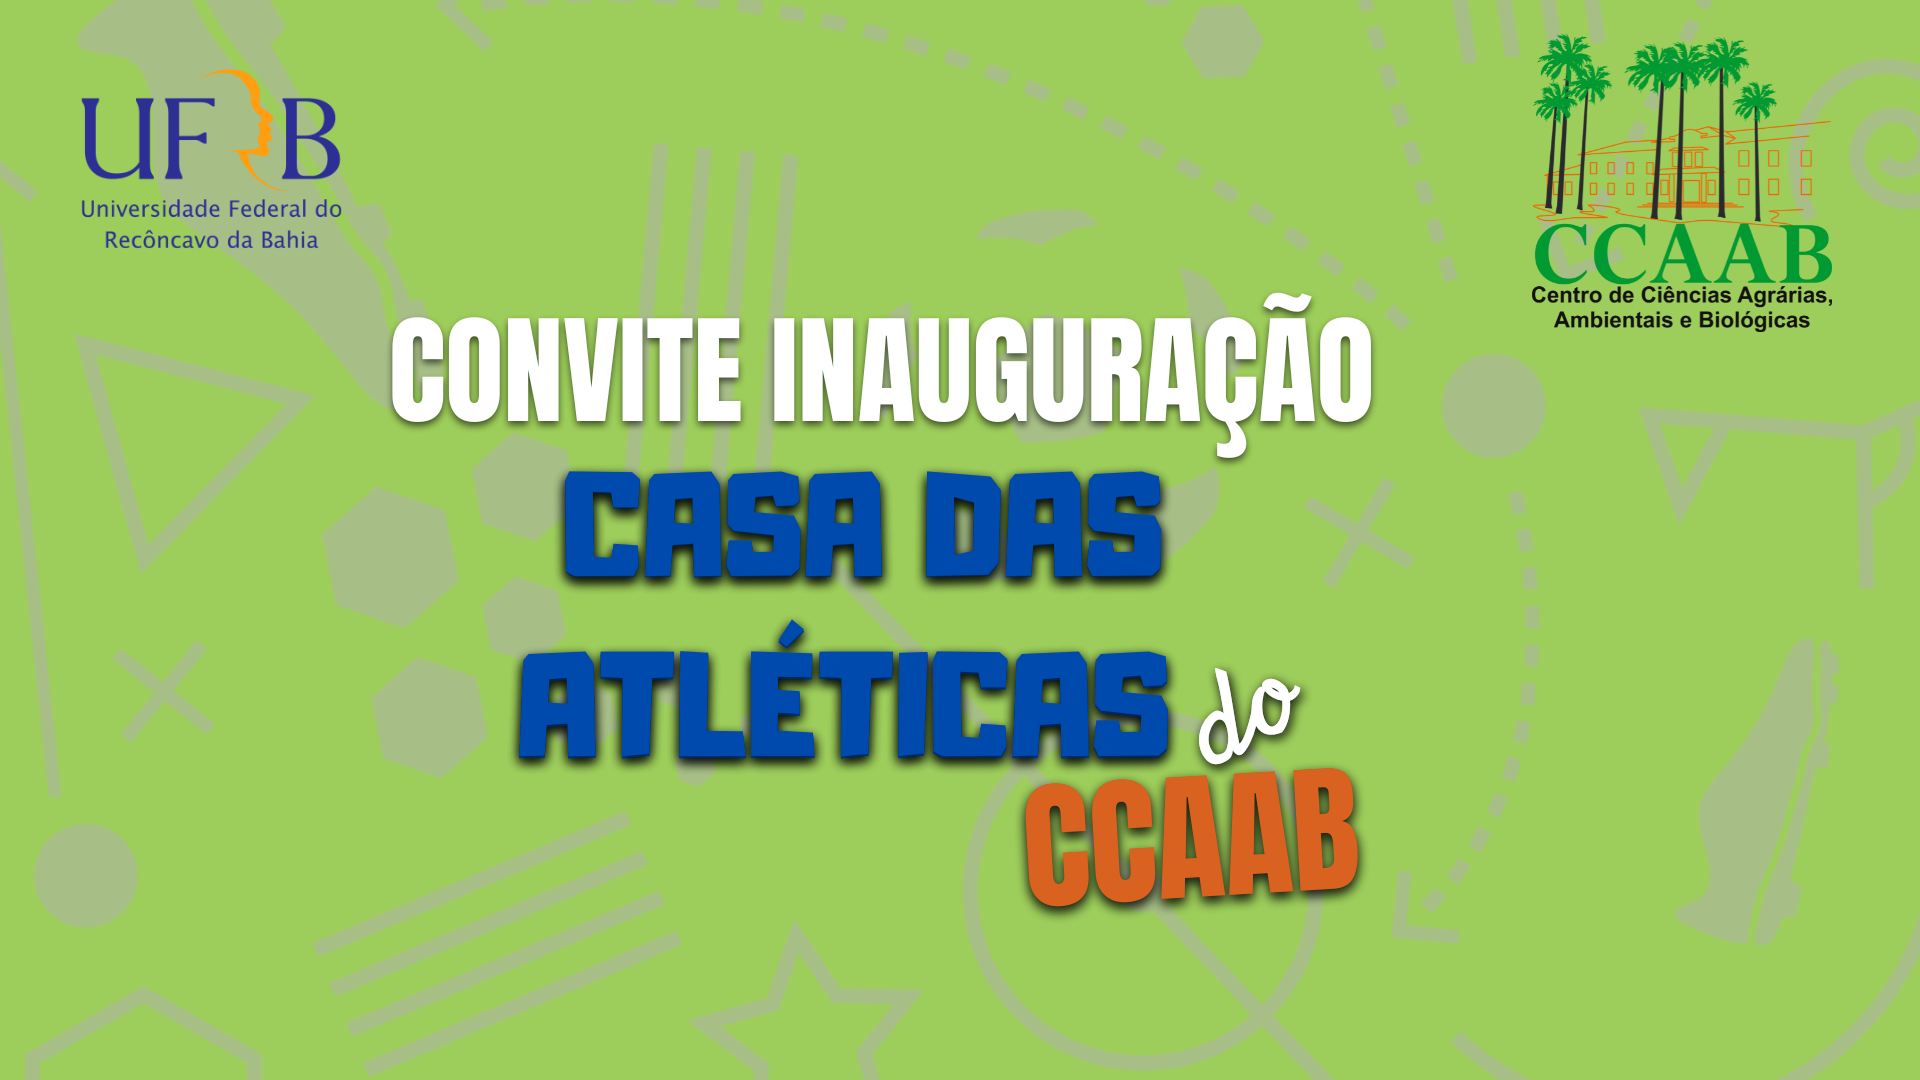 Convite Inauguração da Casa das Atléticas do CCAAB